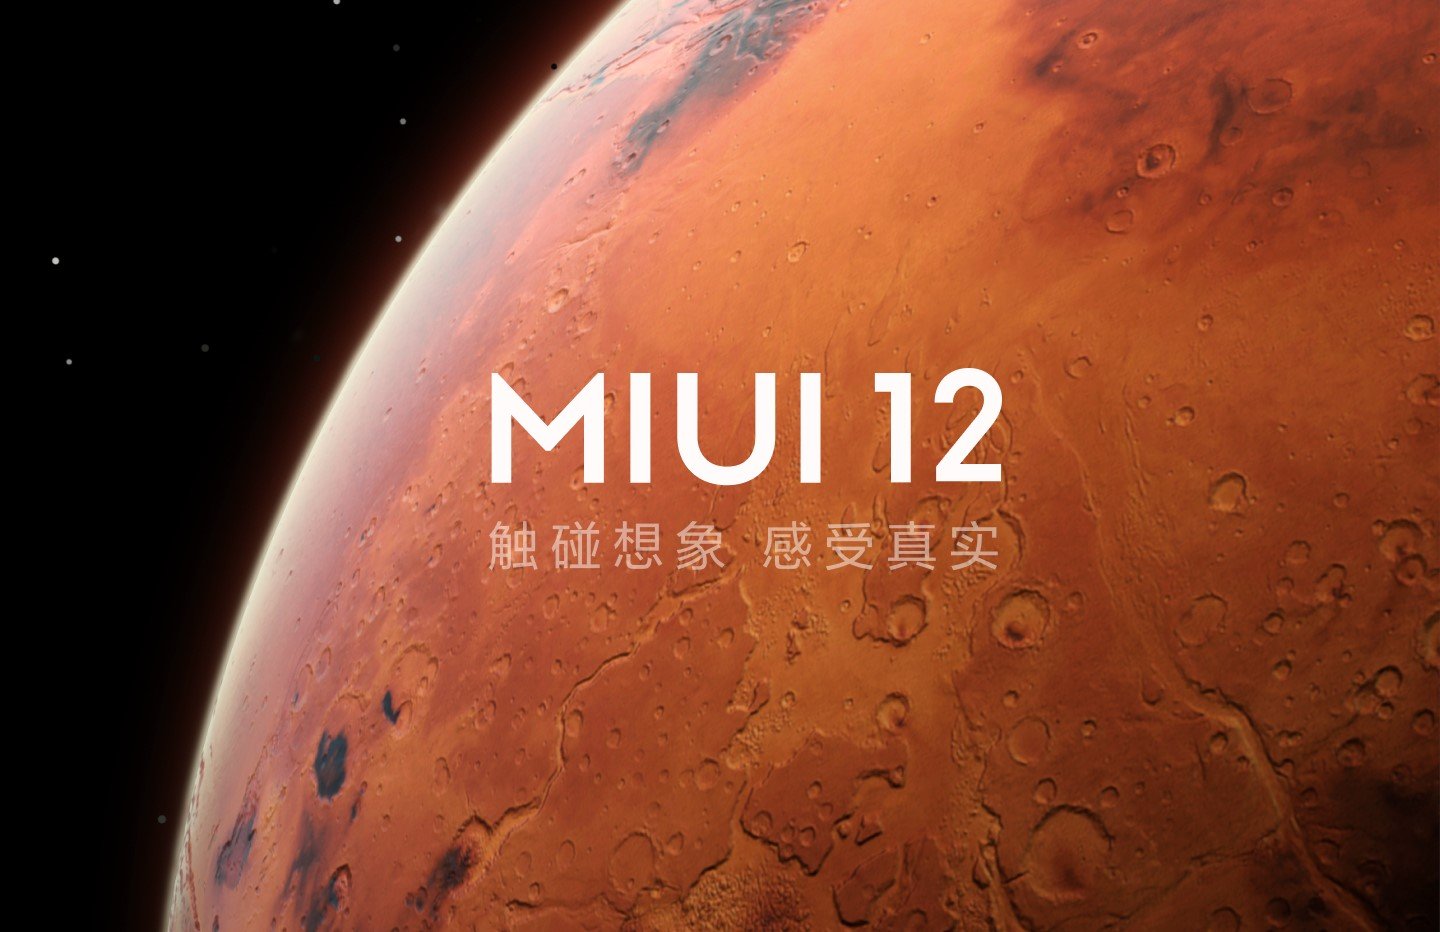 फरवरी 12.5 के अंत में MIUI 2021 स्थिर रिलीज आ रही है